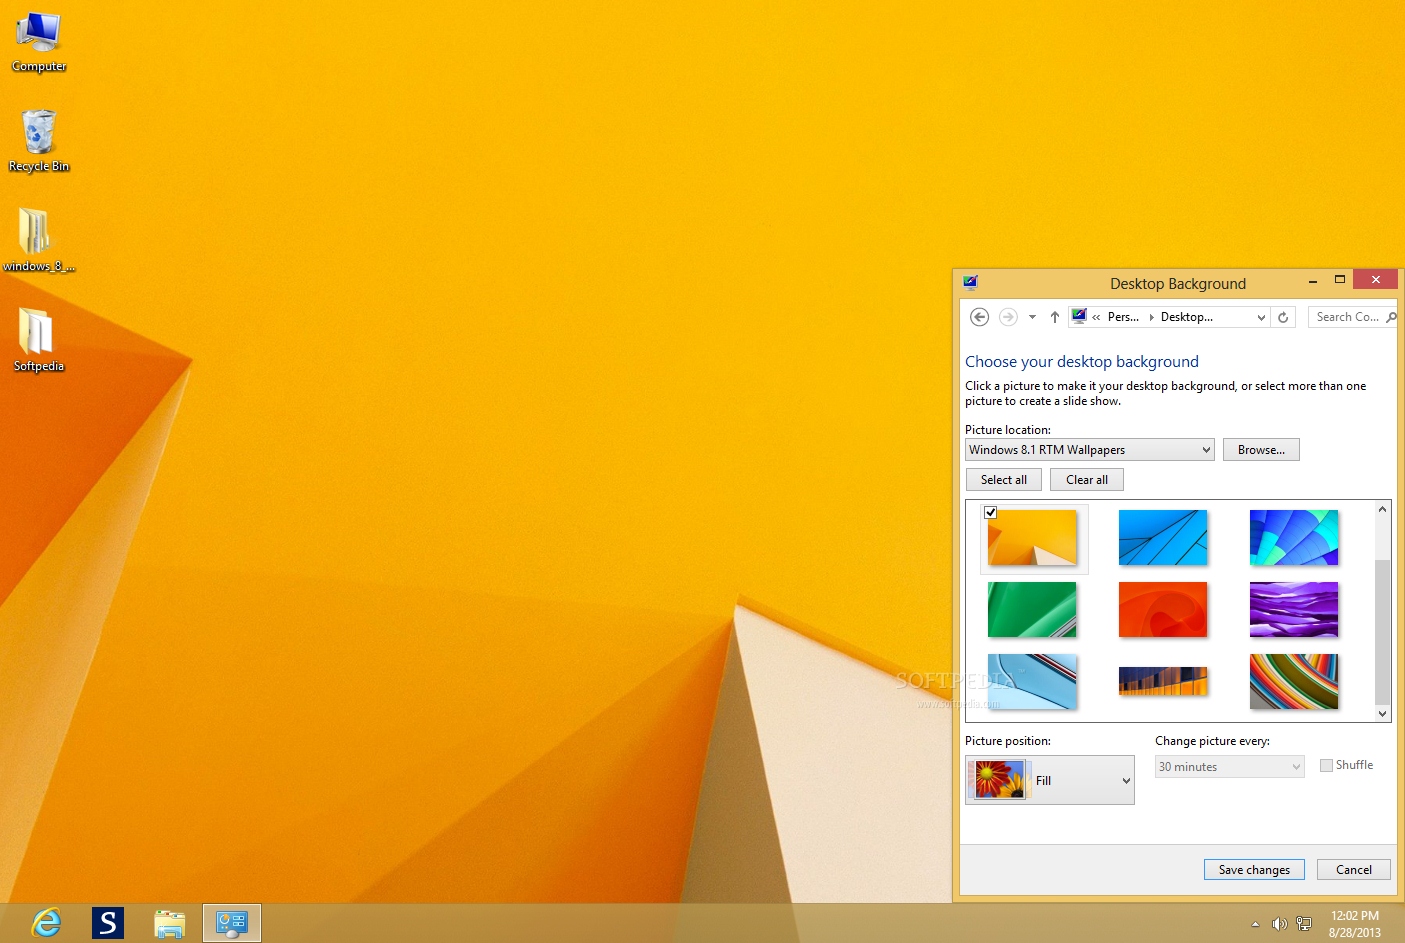 Tải hình nền Windows 8.1 - Không cần phải tìm kiếm nhiều nữa, bạn đã tìm thấy hình nền Windows 8.1 đẹp lung linh ở đây. Với chất lượng cao và thiết kế tuyệt đẹp, bạn sẽ cảm thấy thích thú khi sử dụng nó trên màn hình của mình.